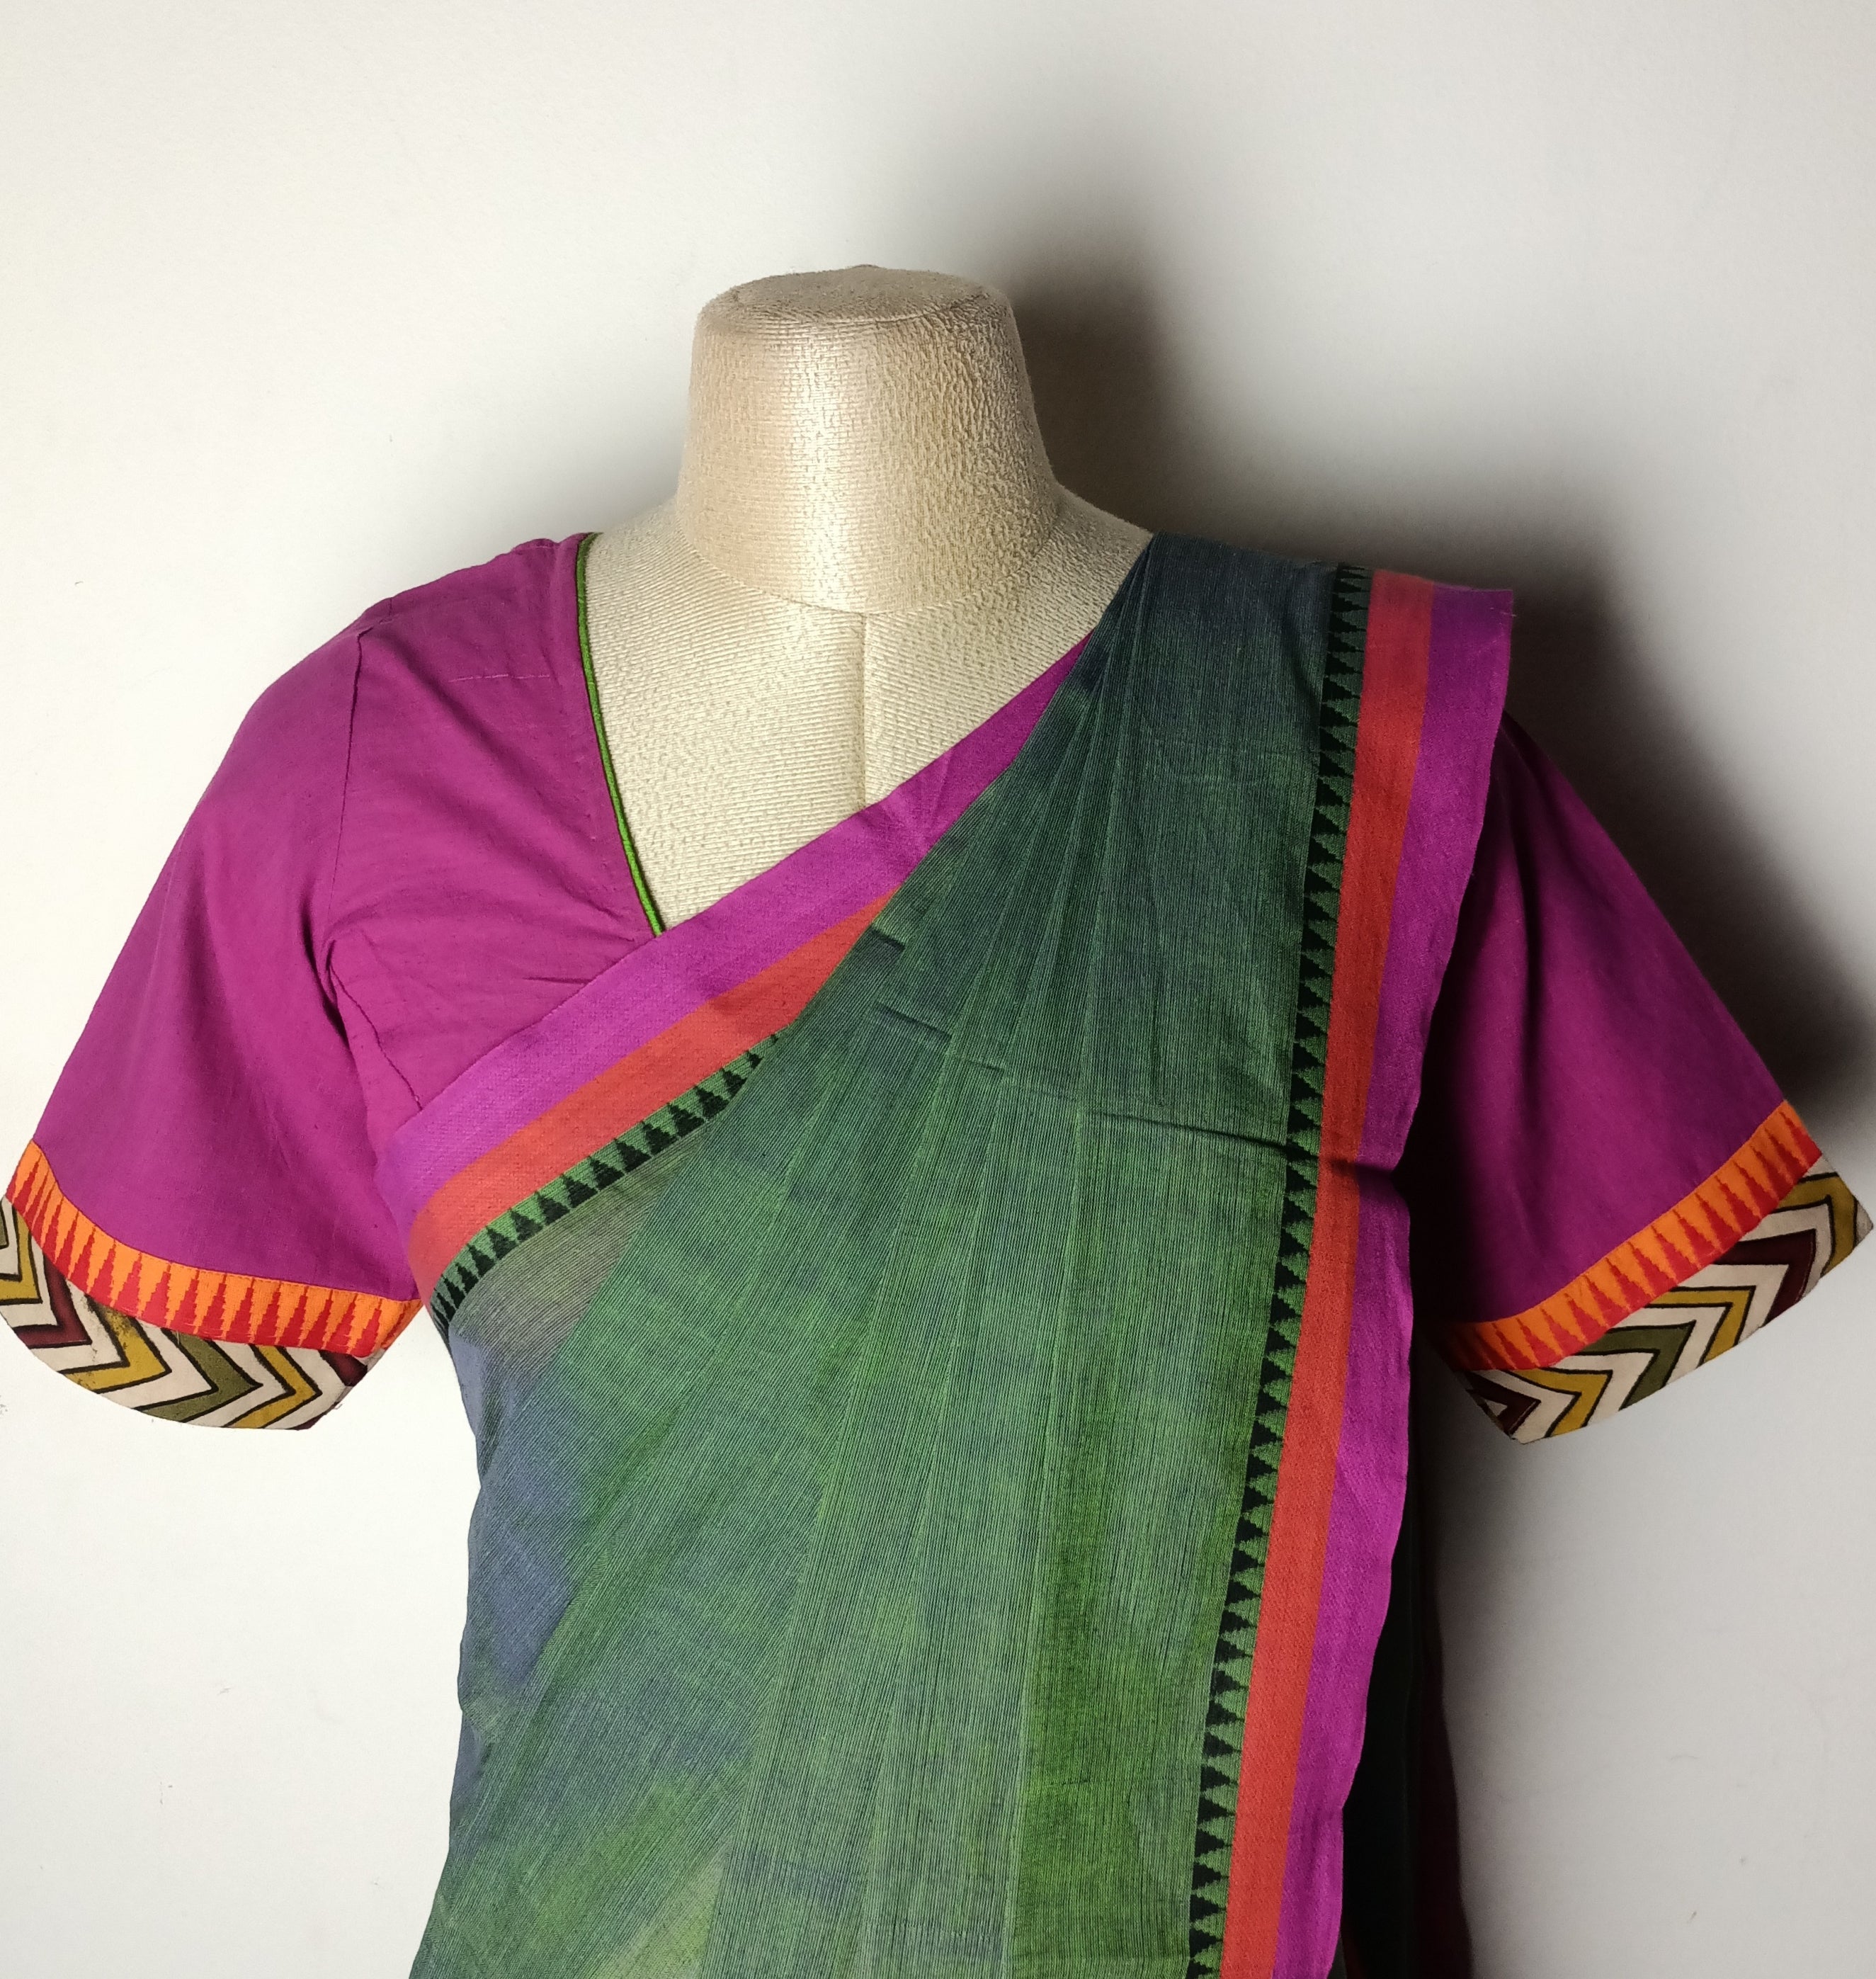 SAREE Dark organic green saree with pink border and matching cotton pink blouse combo - Umbara design - saree blouse comboCOMBO -65